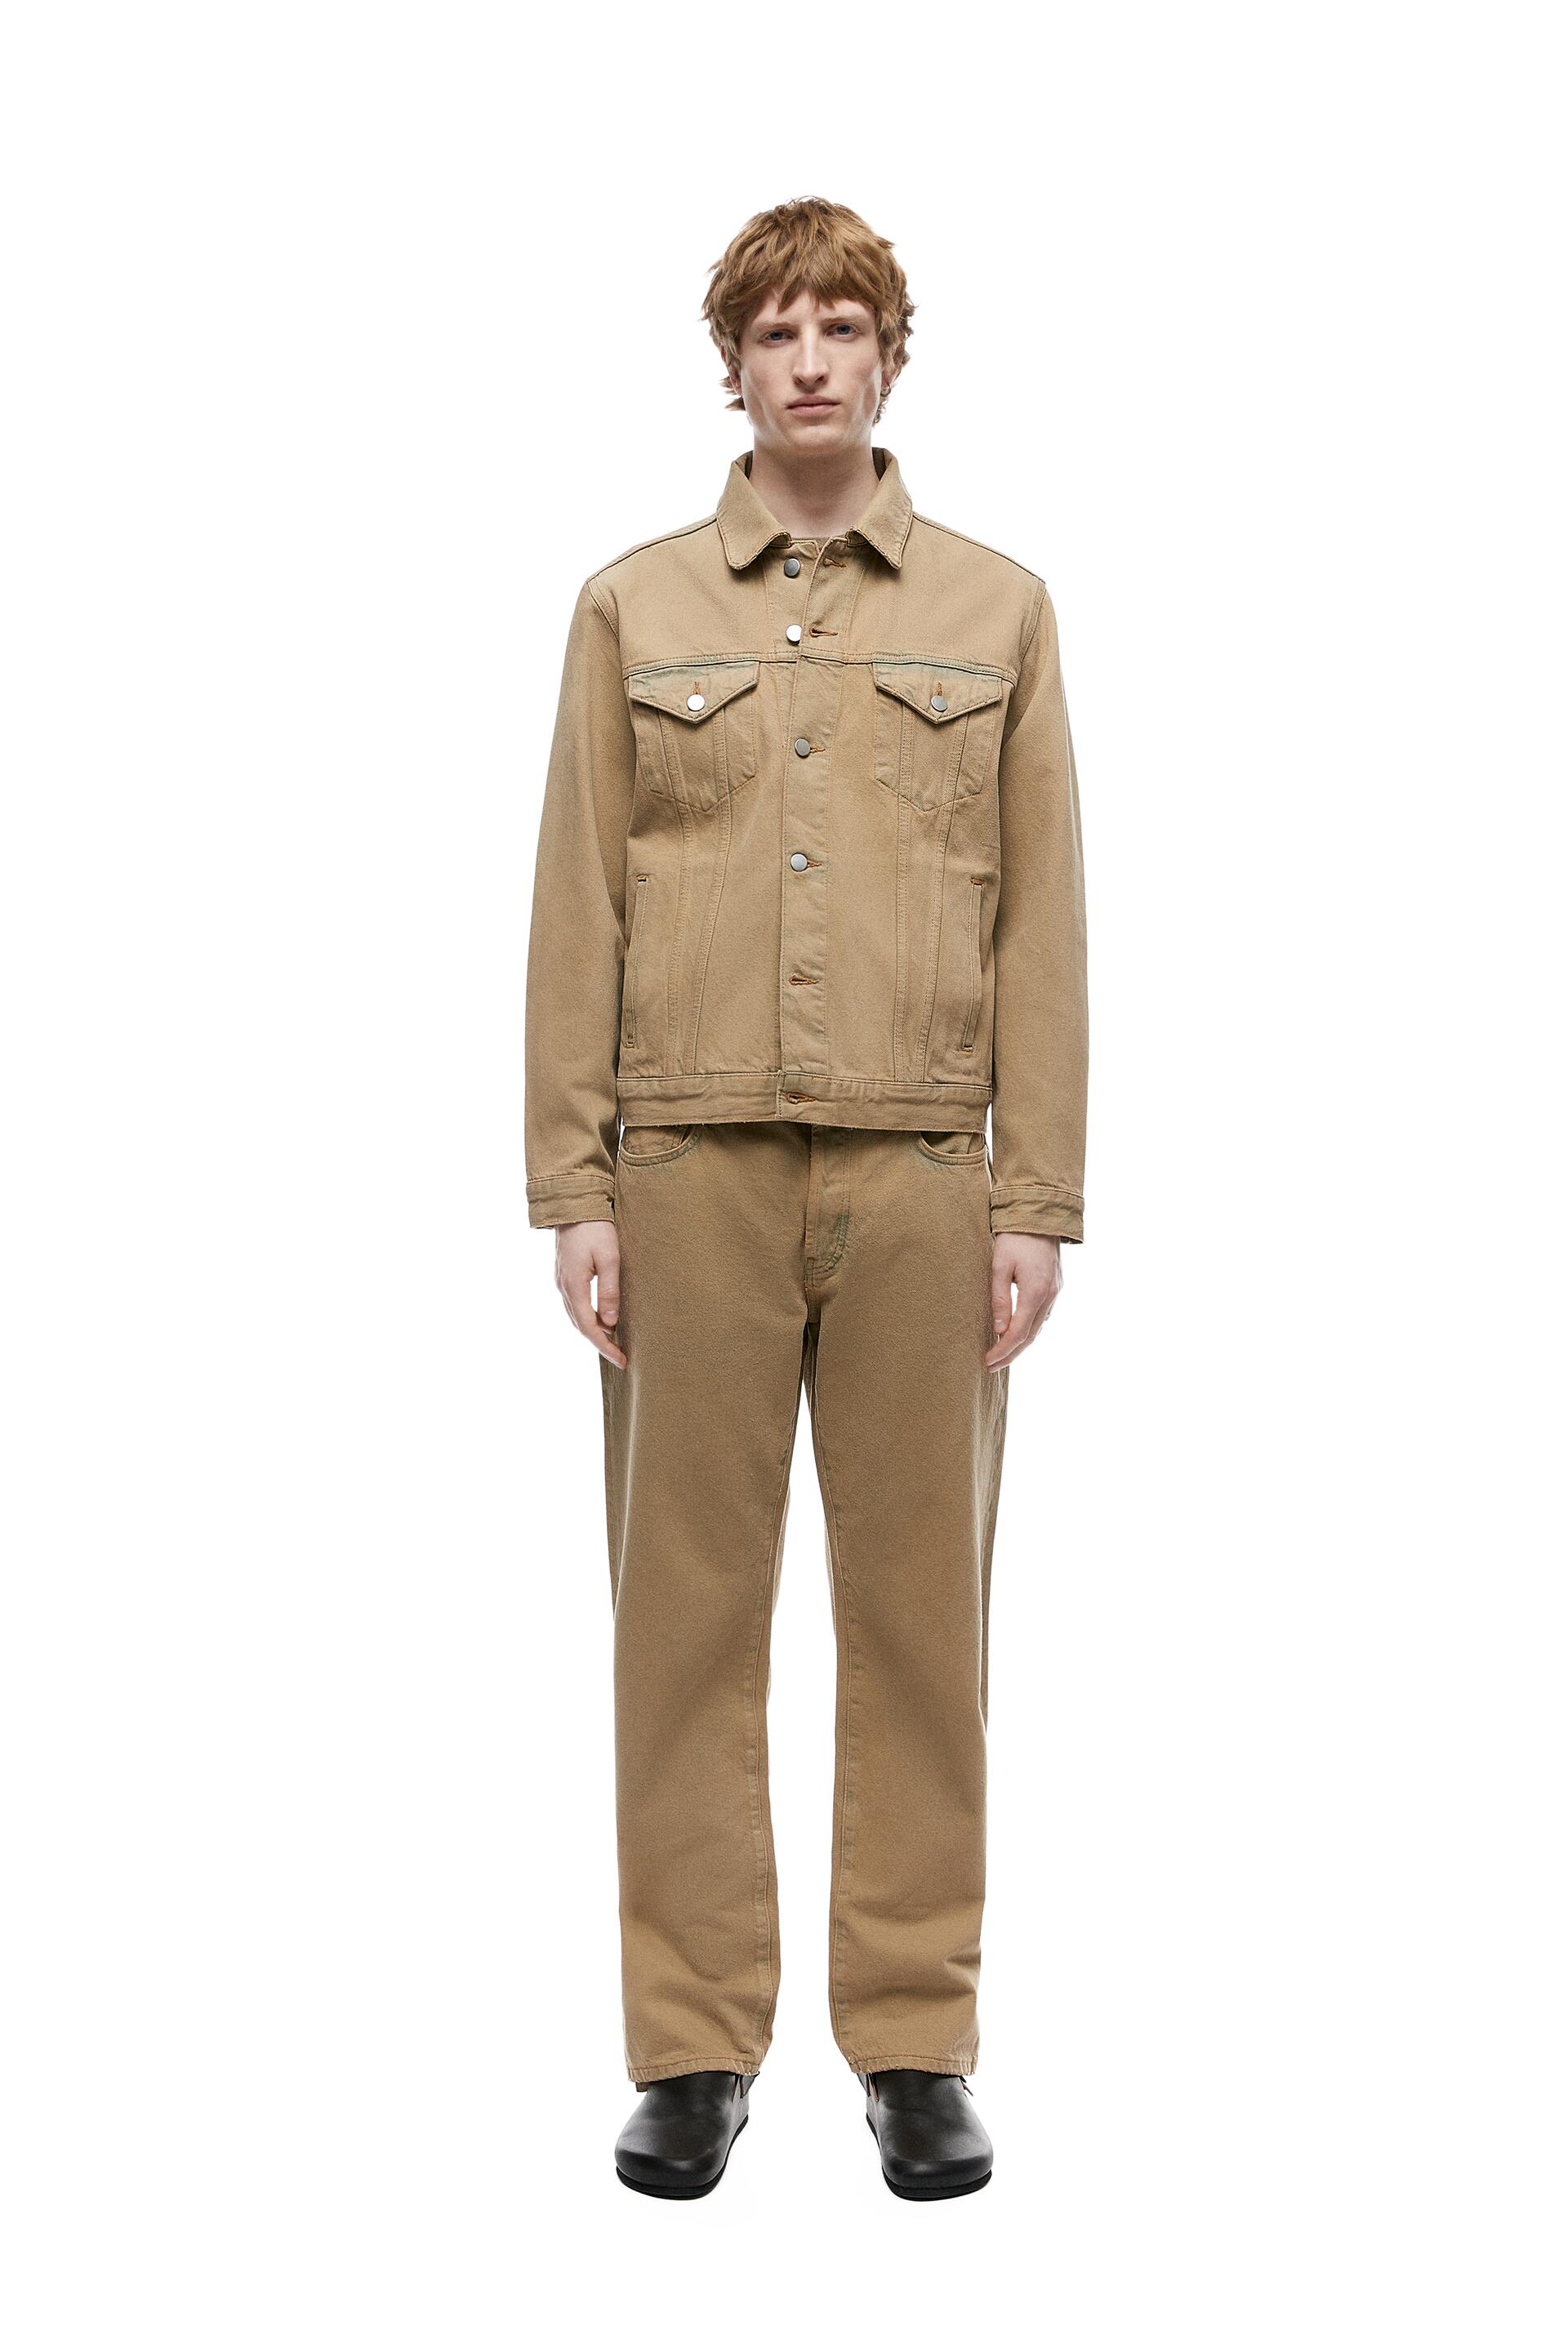 Джинсовая куртка мужская ZARA 06688468 бежевая XL (доставка из-за рубежа)